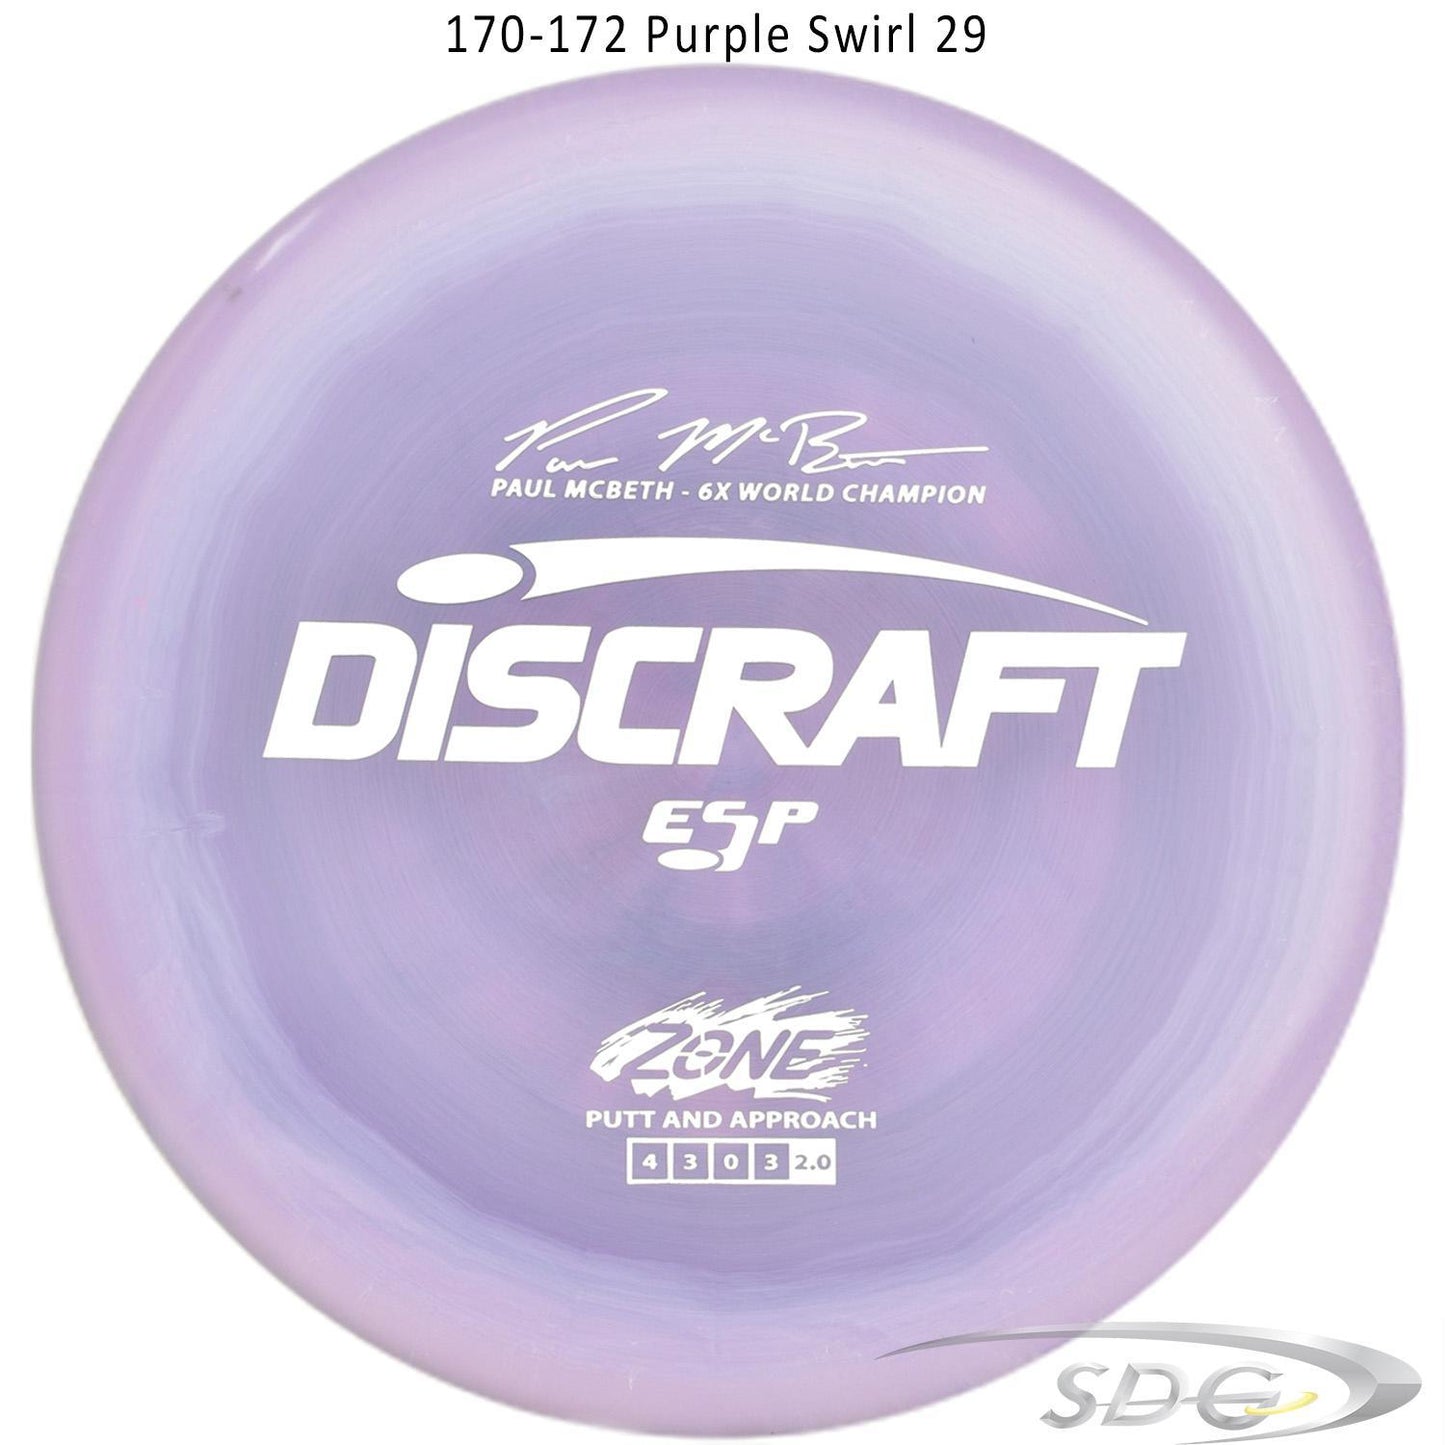 discraft-esp-zone-6x-paul-mcbeth-signature-series-disc-golf-putter 170-172 Purple Swirl 29